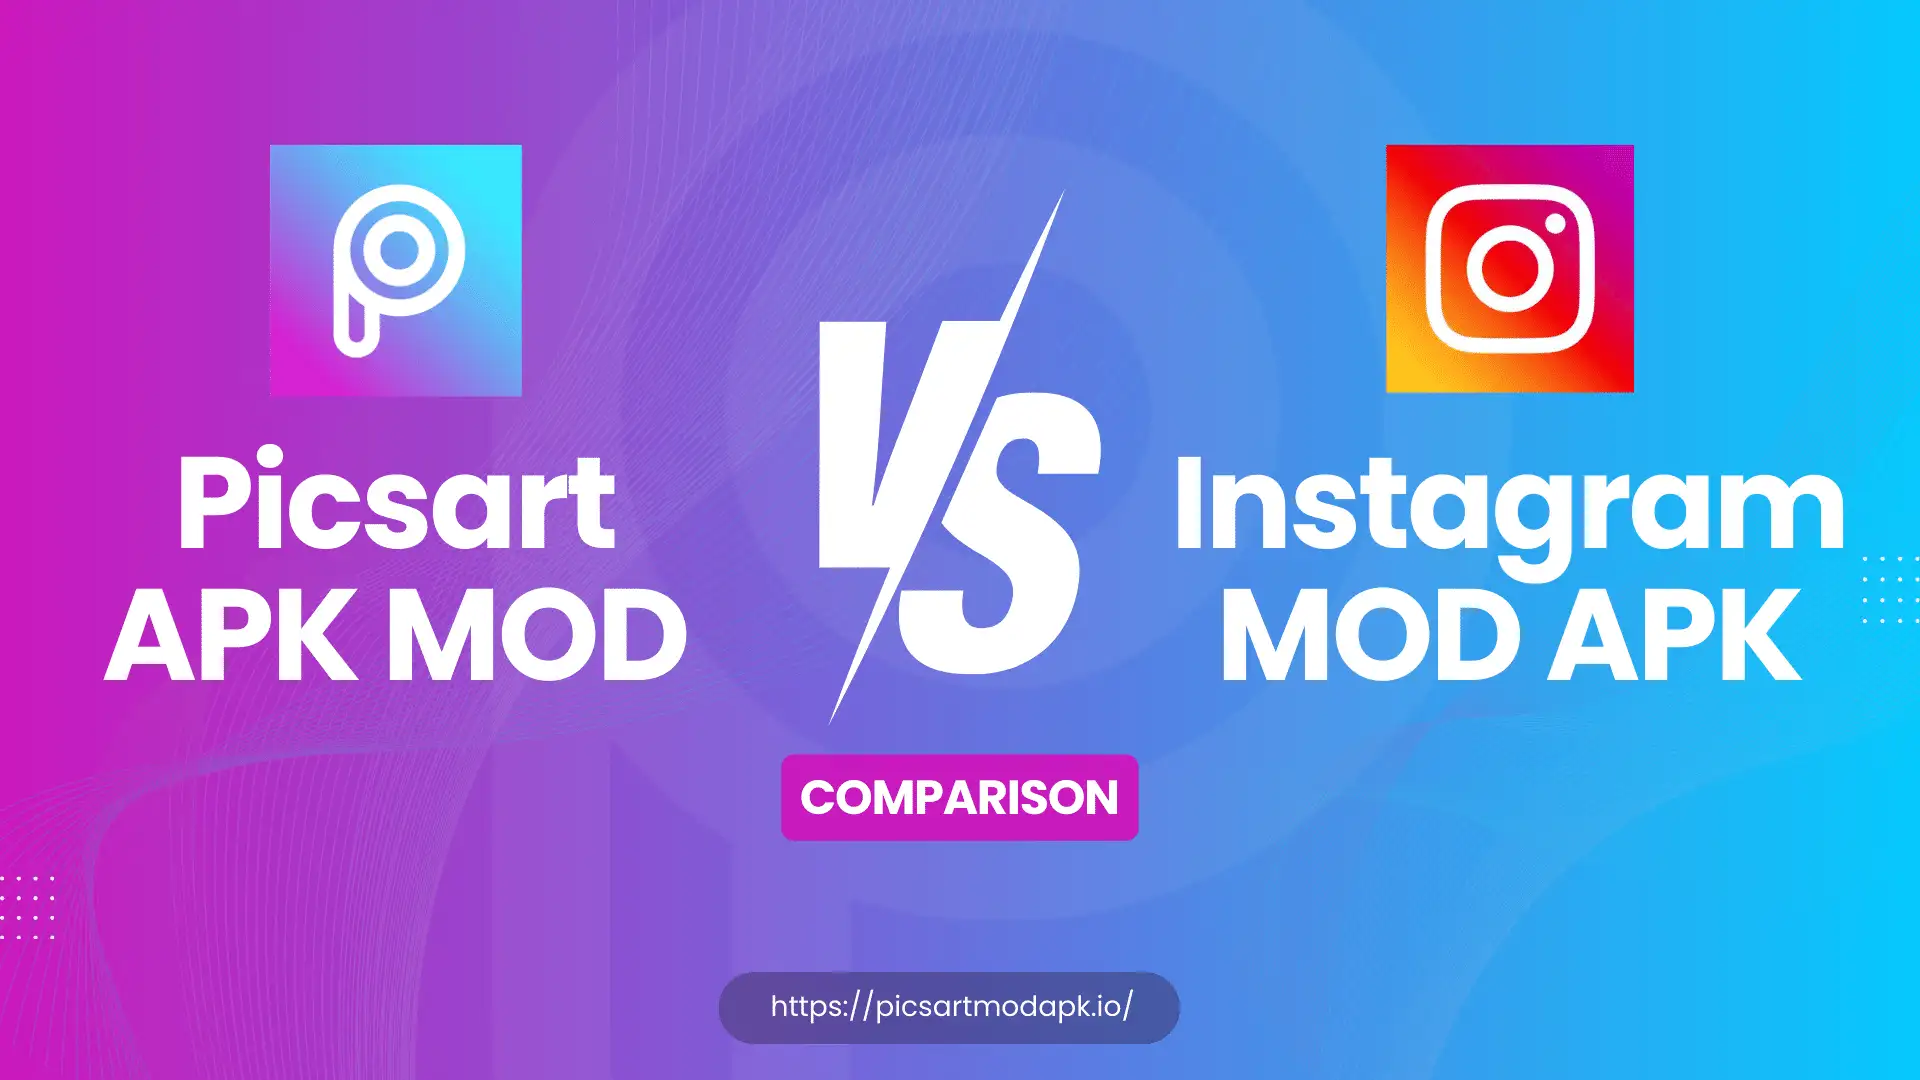 Comparison of Picsart APK Mod vs Instagram MOD APK - Blog - picsartmodapk.io